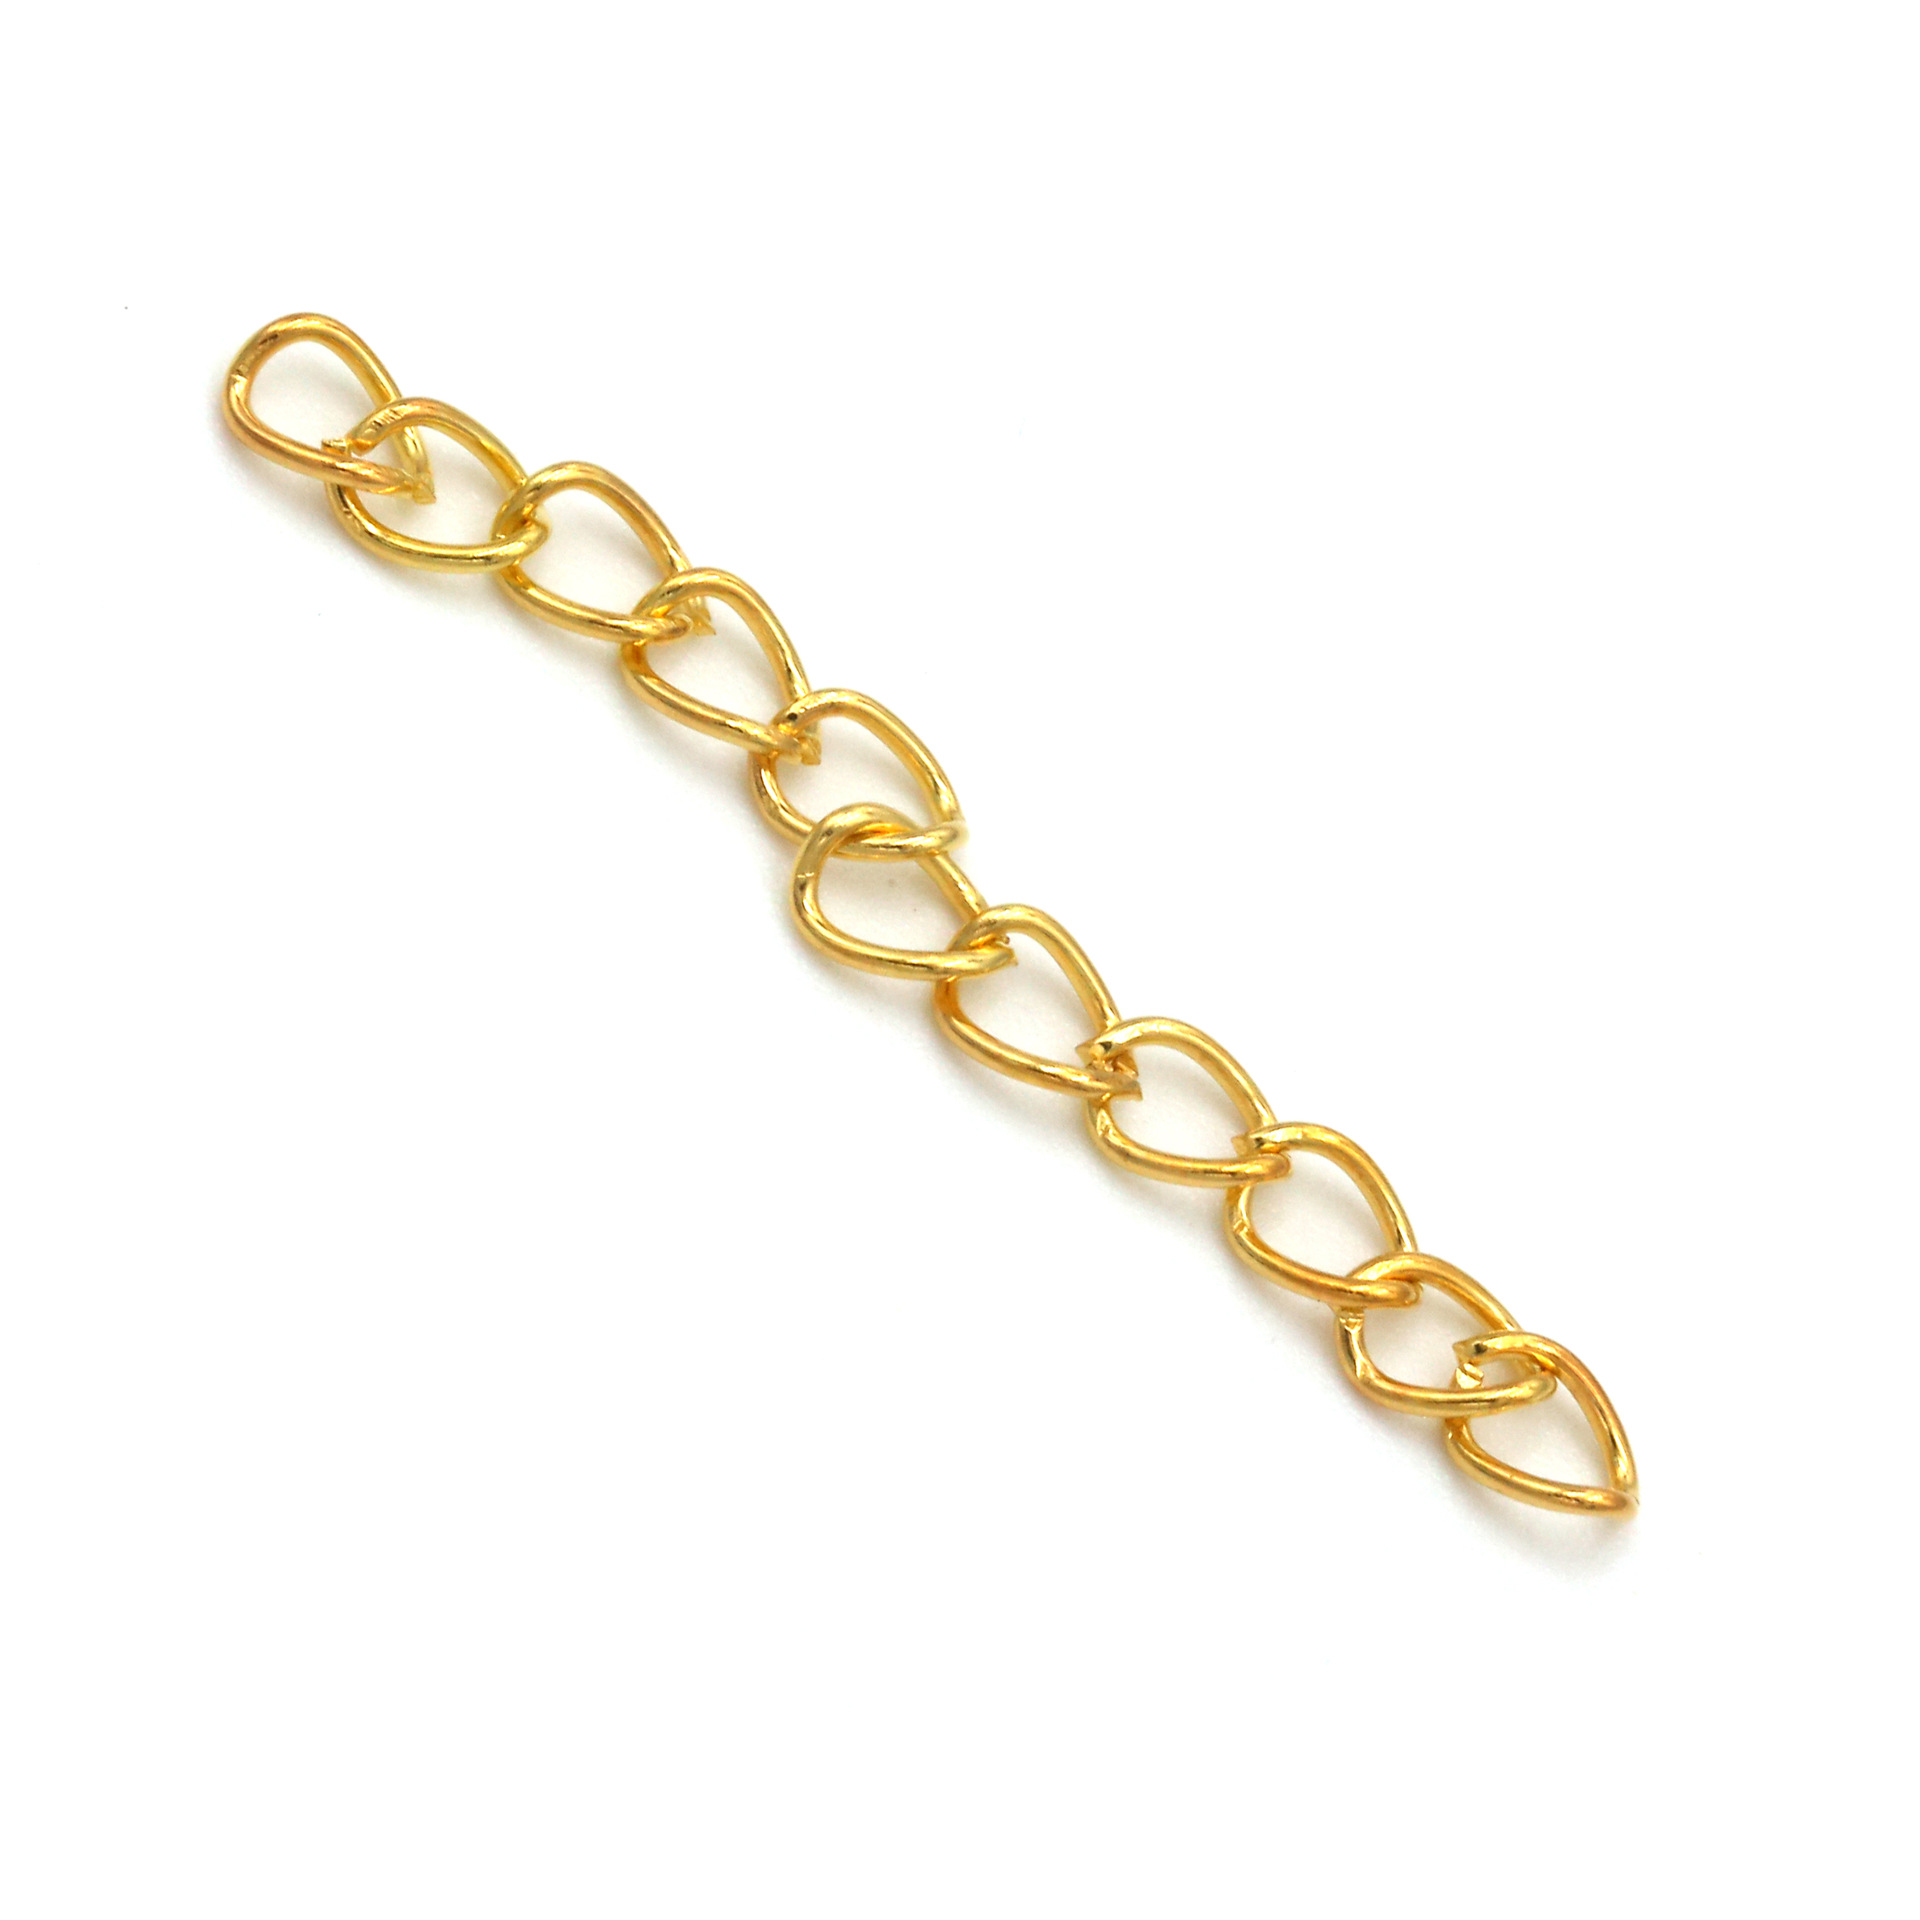 200 PCs/Pack Wholesale Color Retention Necklace Bracelet Extension Chain Adjustable Chain Tail Chain DIY Ornament Accessories